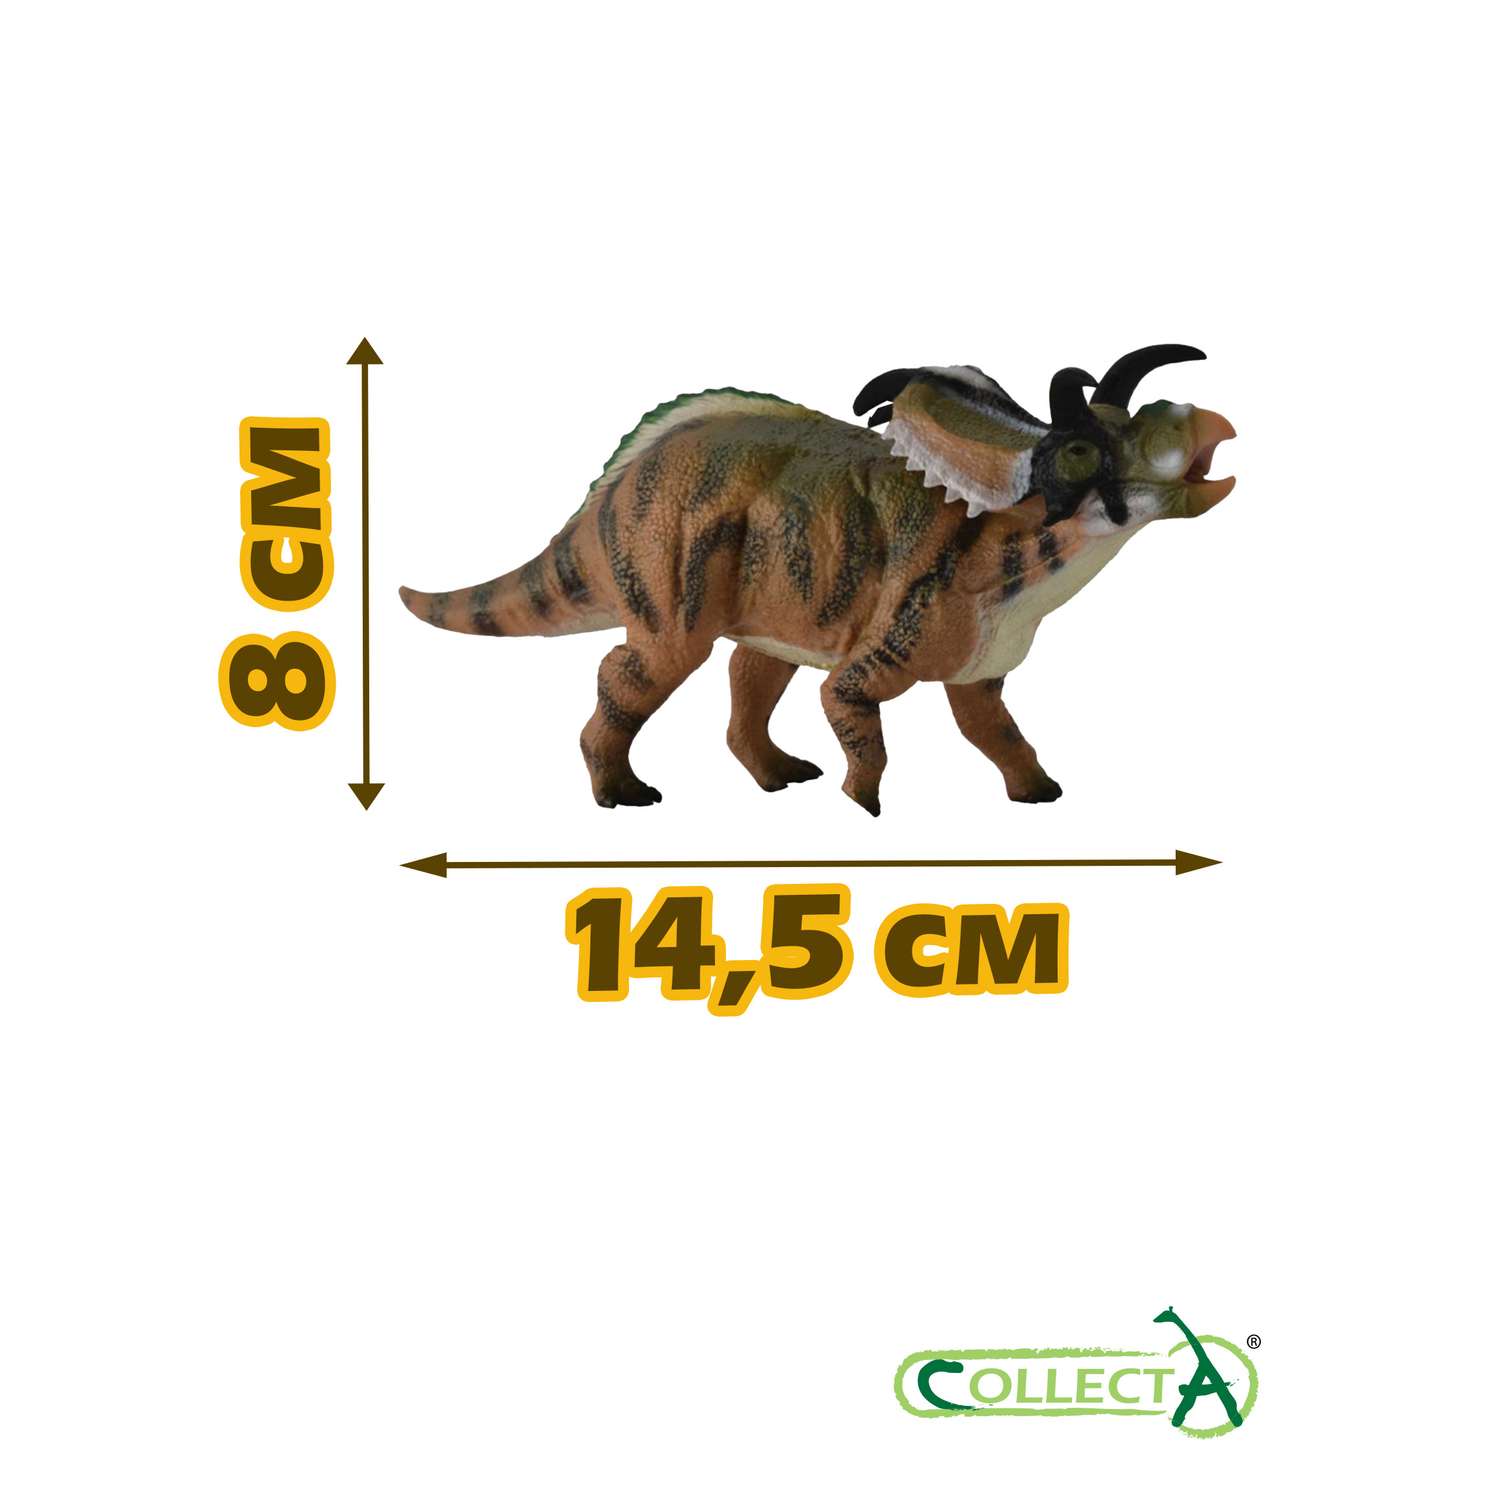 Игрушка Collecta Медузацератопс фигурка динозавра - фото 2